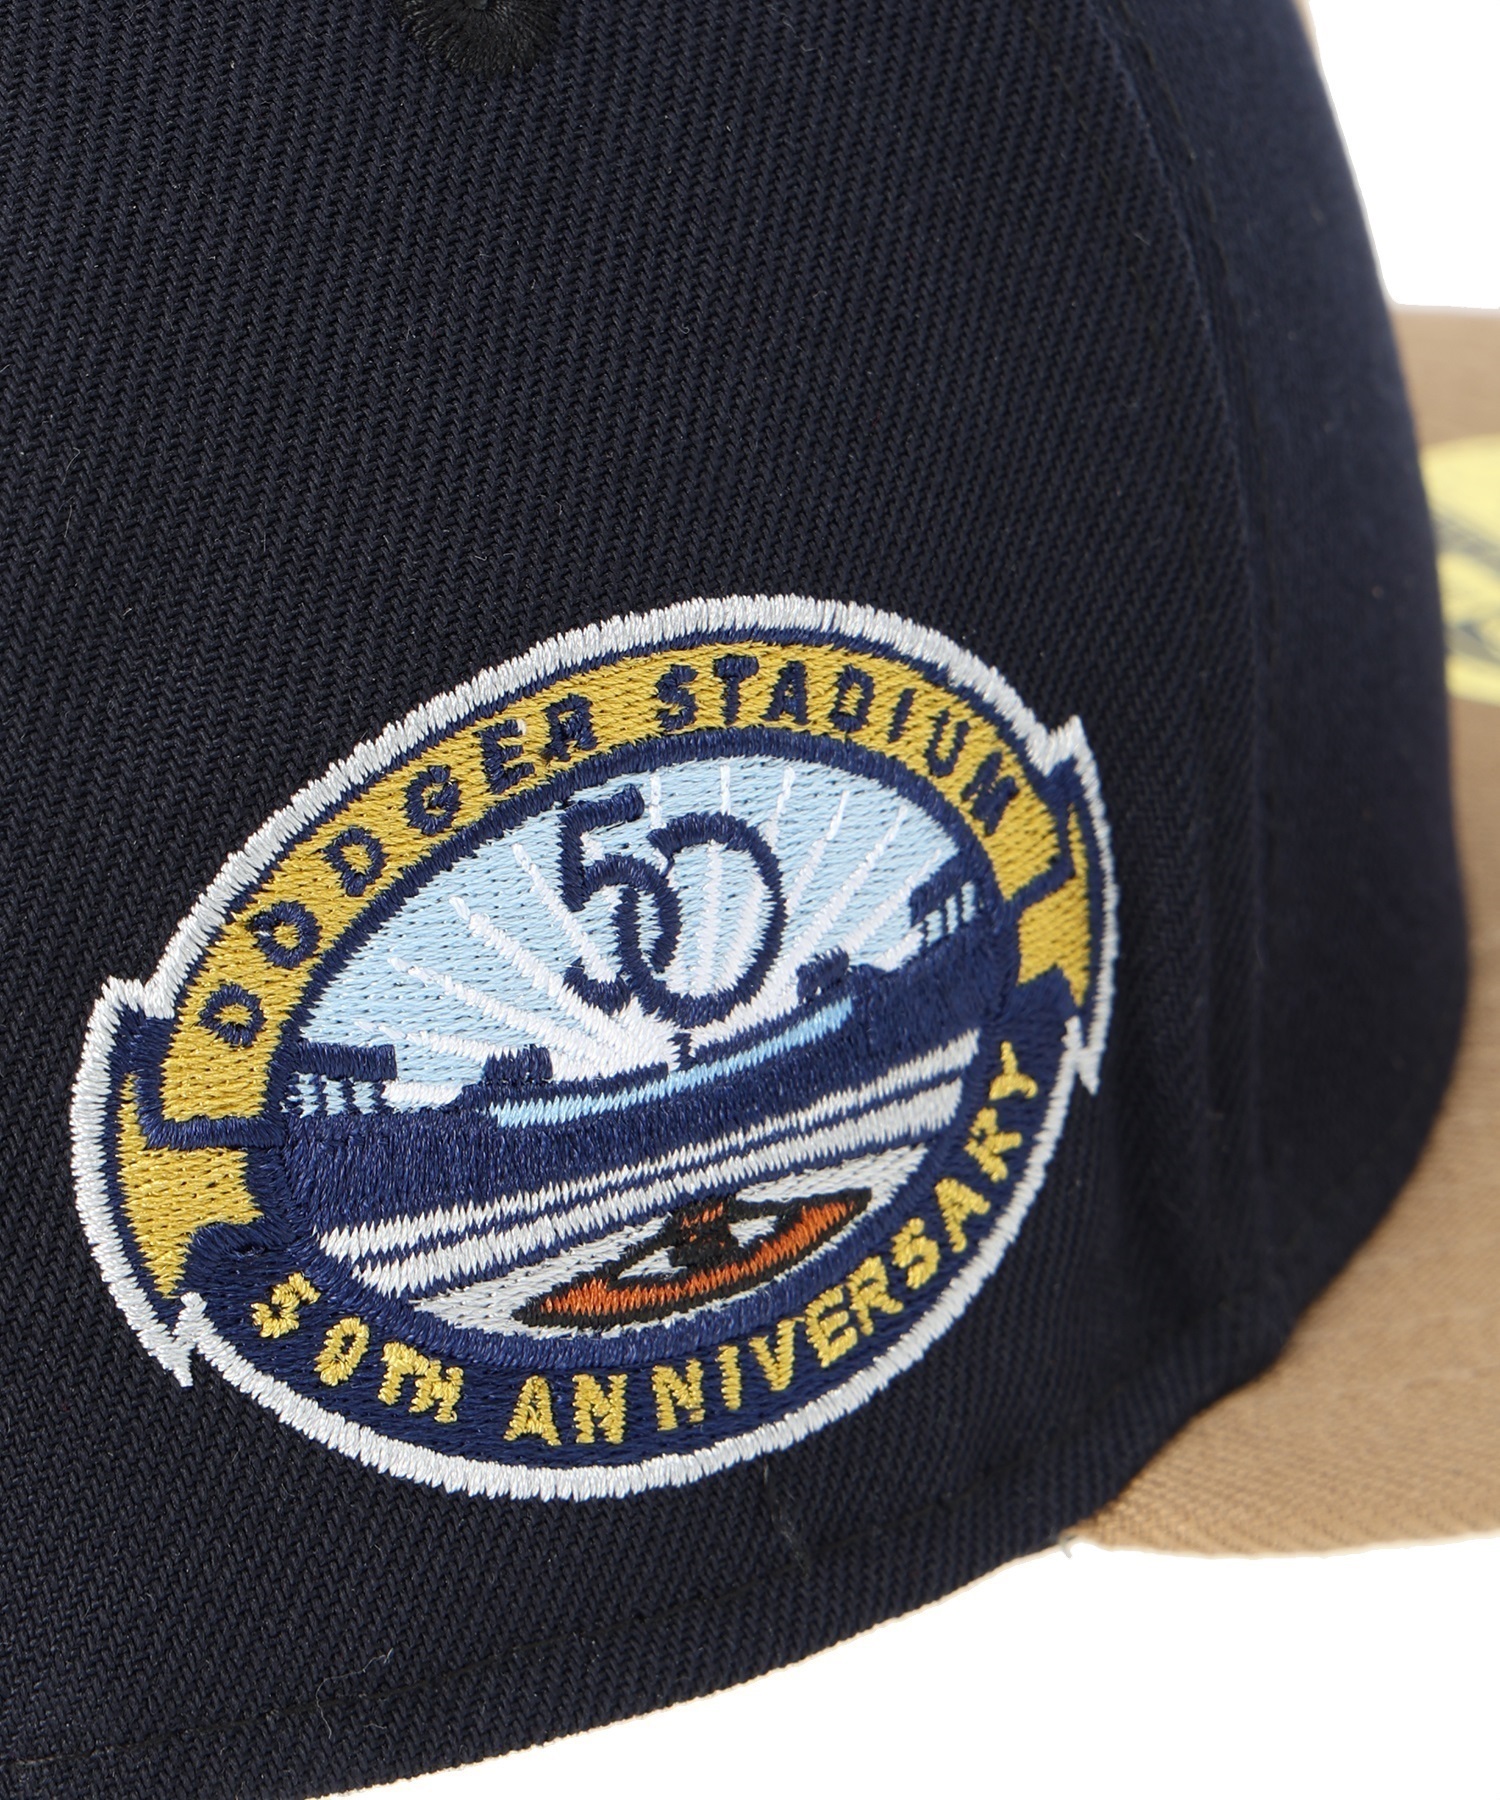 NEW ERA/ニューエラ LP 59FIFTY 50TH ロサンゼルス・ドジャース ネイビー カーキバイザー キャップ 帽子 ムラサキスポーツカスタムカラー 70761990(NVKHA-7)